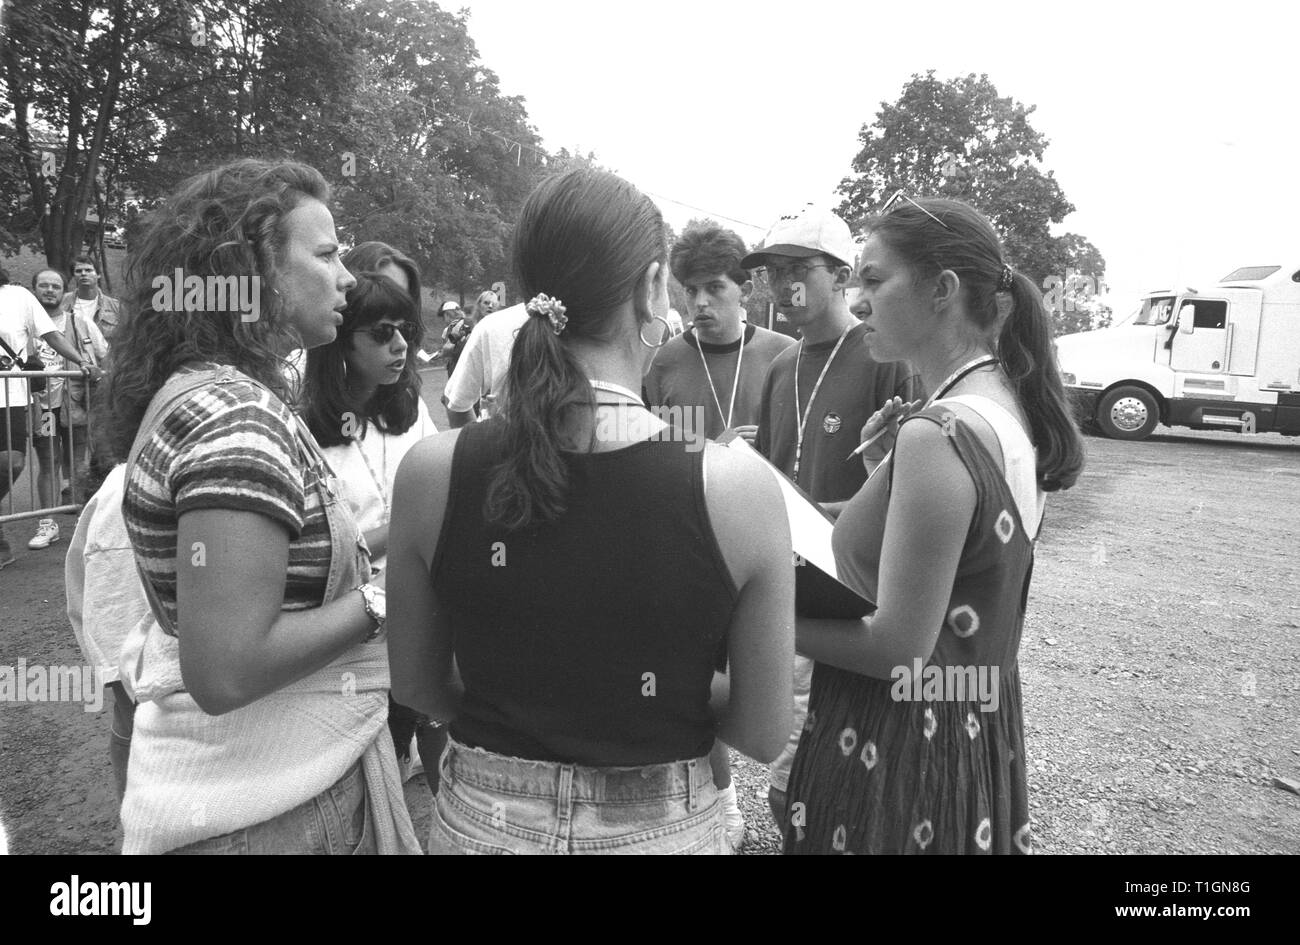 Gli organizzatori dei supporti sono mostrati aventi una candida conversazione backstage prima dell'inizio di Woodstock 94 in Saugerties, New York. Foto Stock